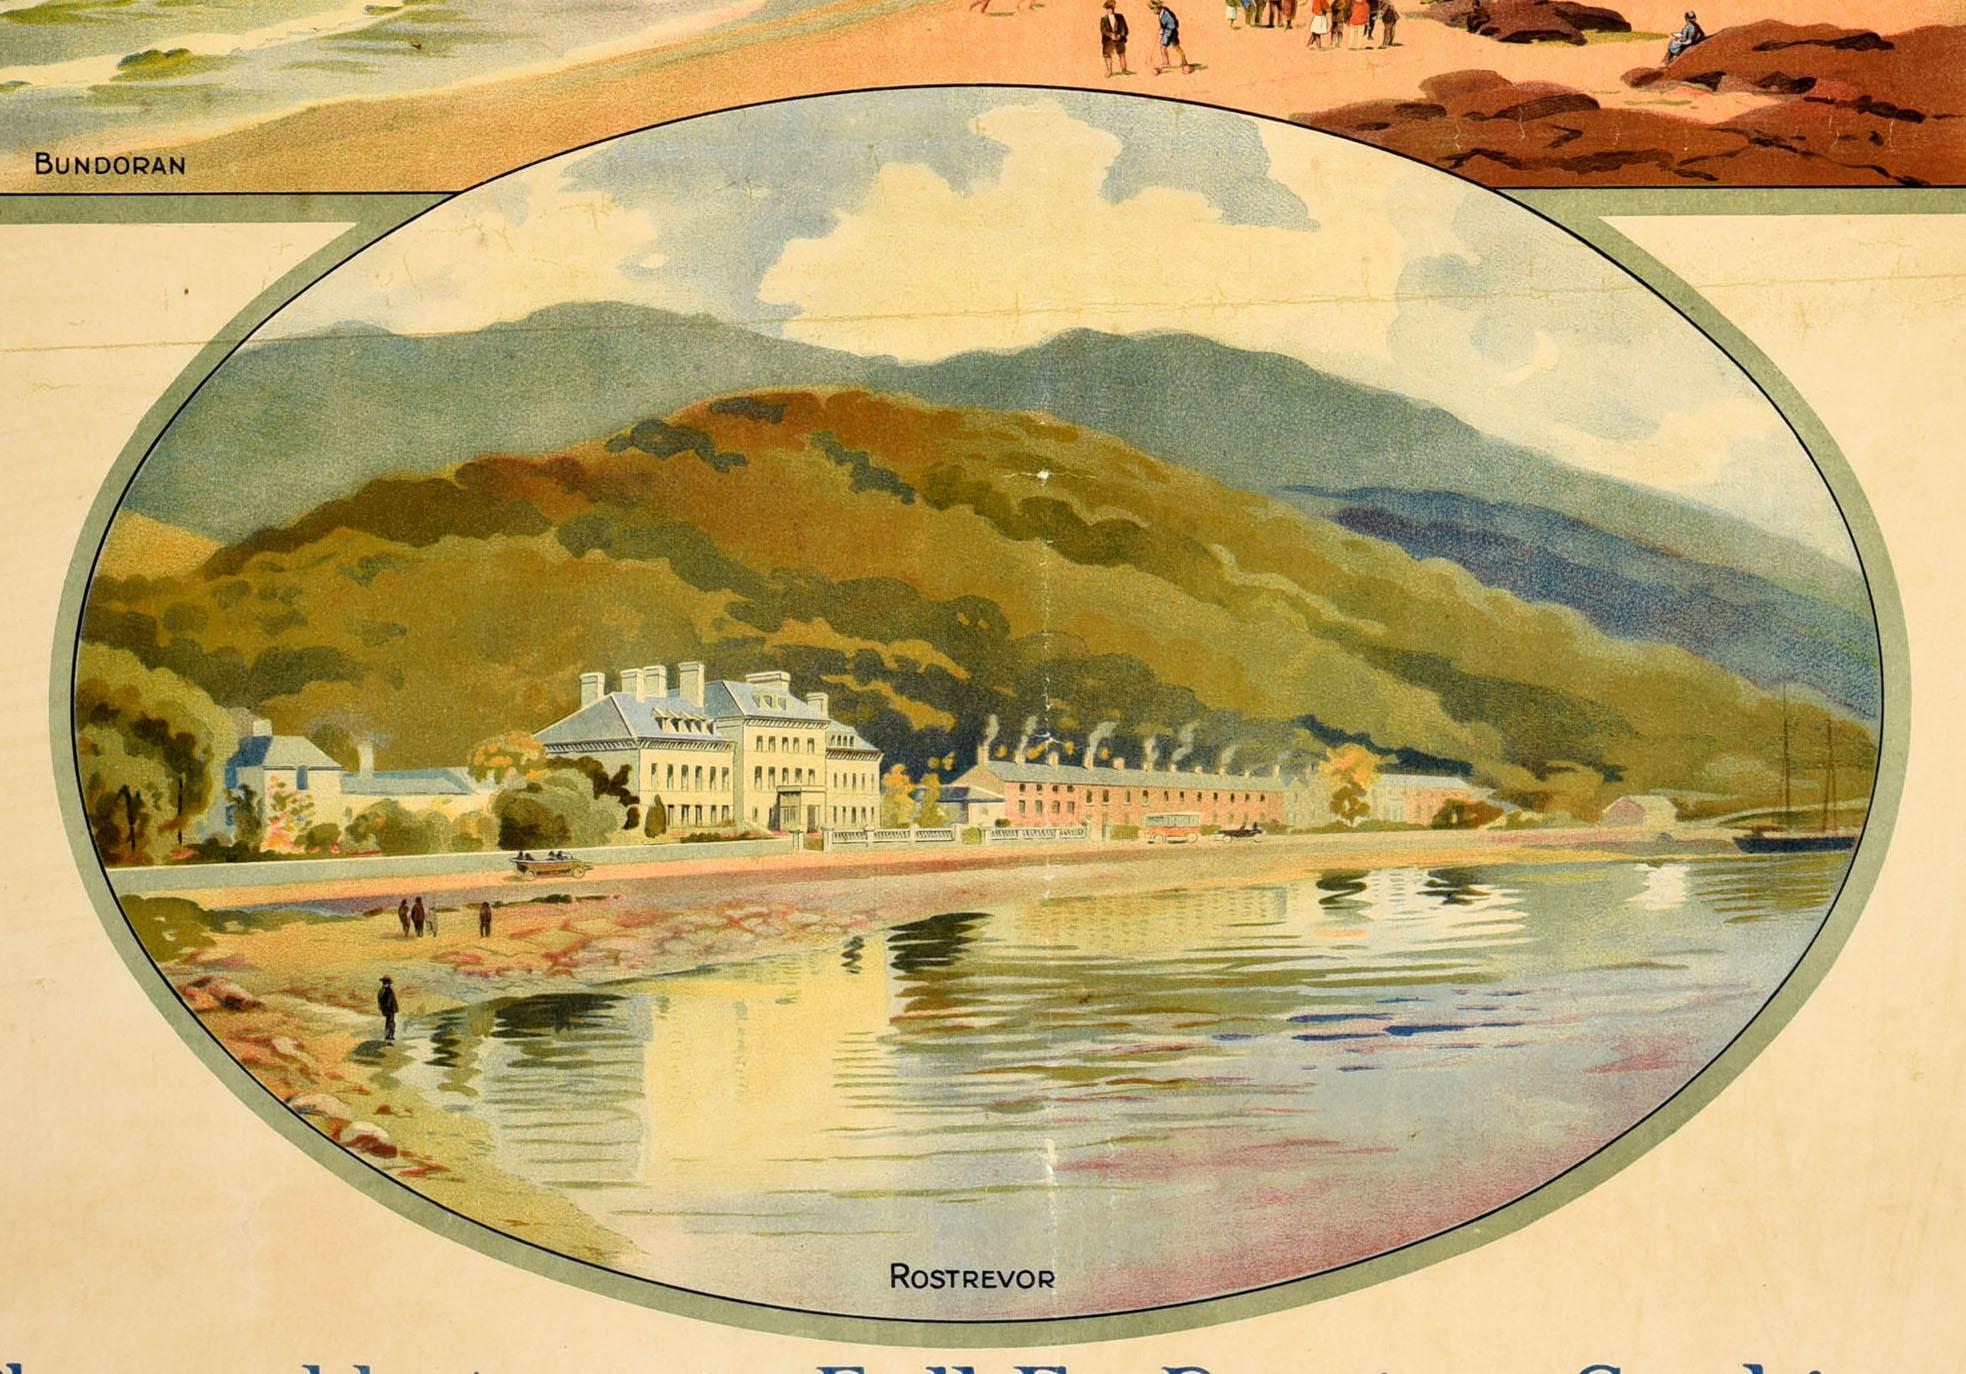 British Original Antique Travel Poster Great Northern Railway Ireland Hotels Bundoran For Sale